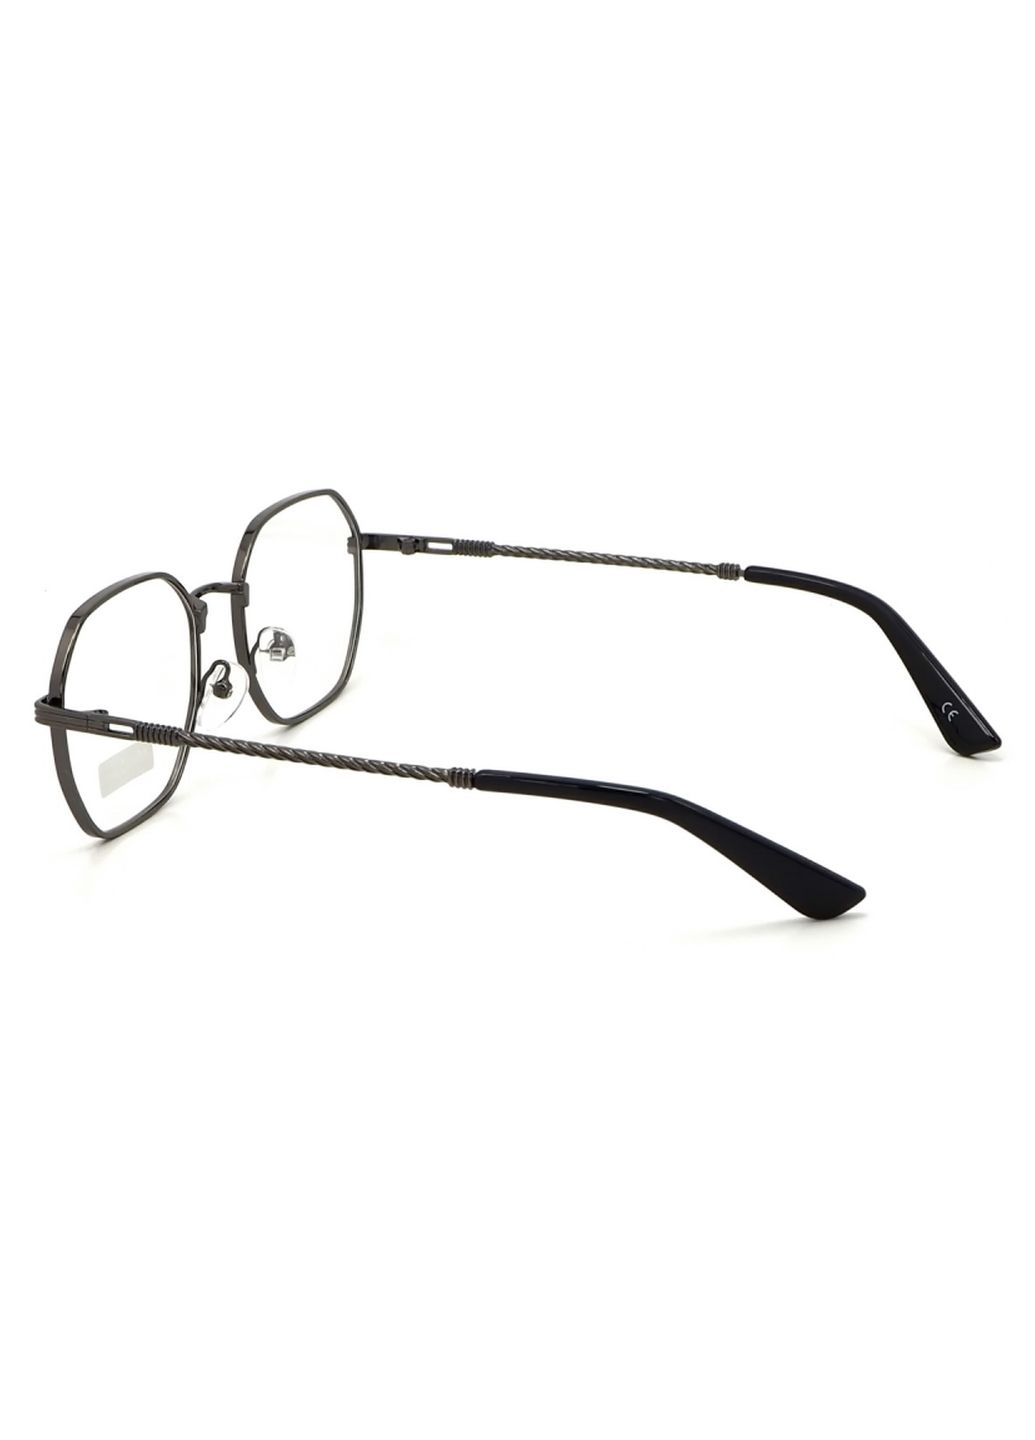 Купить Очки для работы за компьютером Cooper Glasses в серой оправе 124010 в интернет-магазине